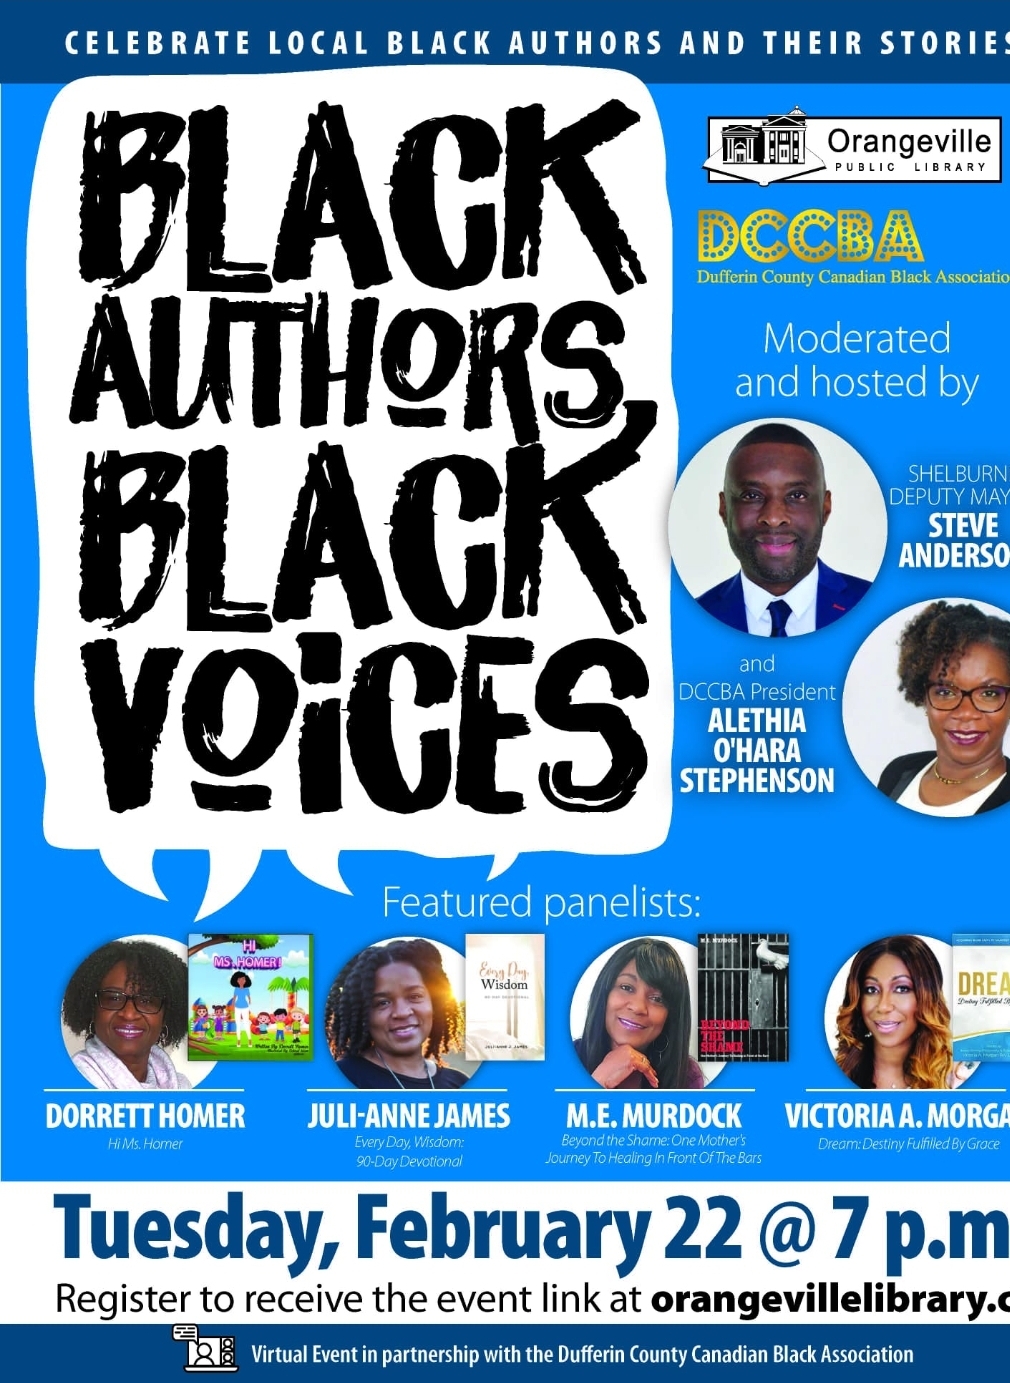 Black Authors Black Voices - A Black History Month Event